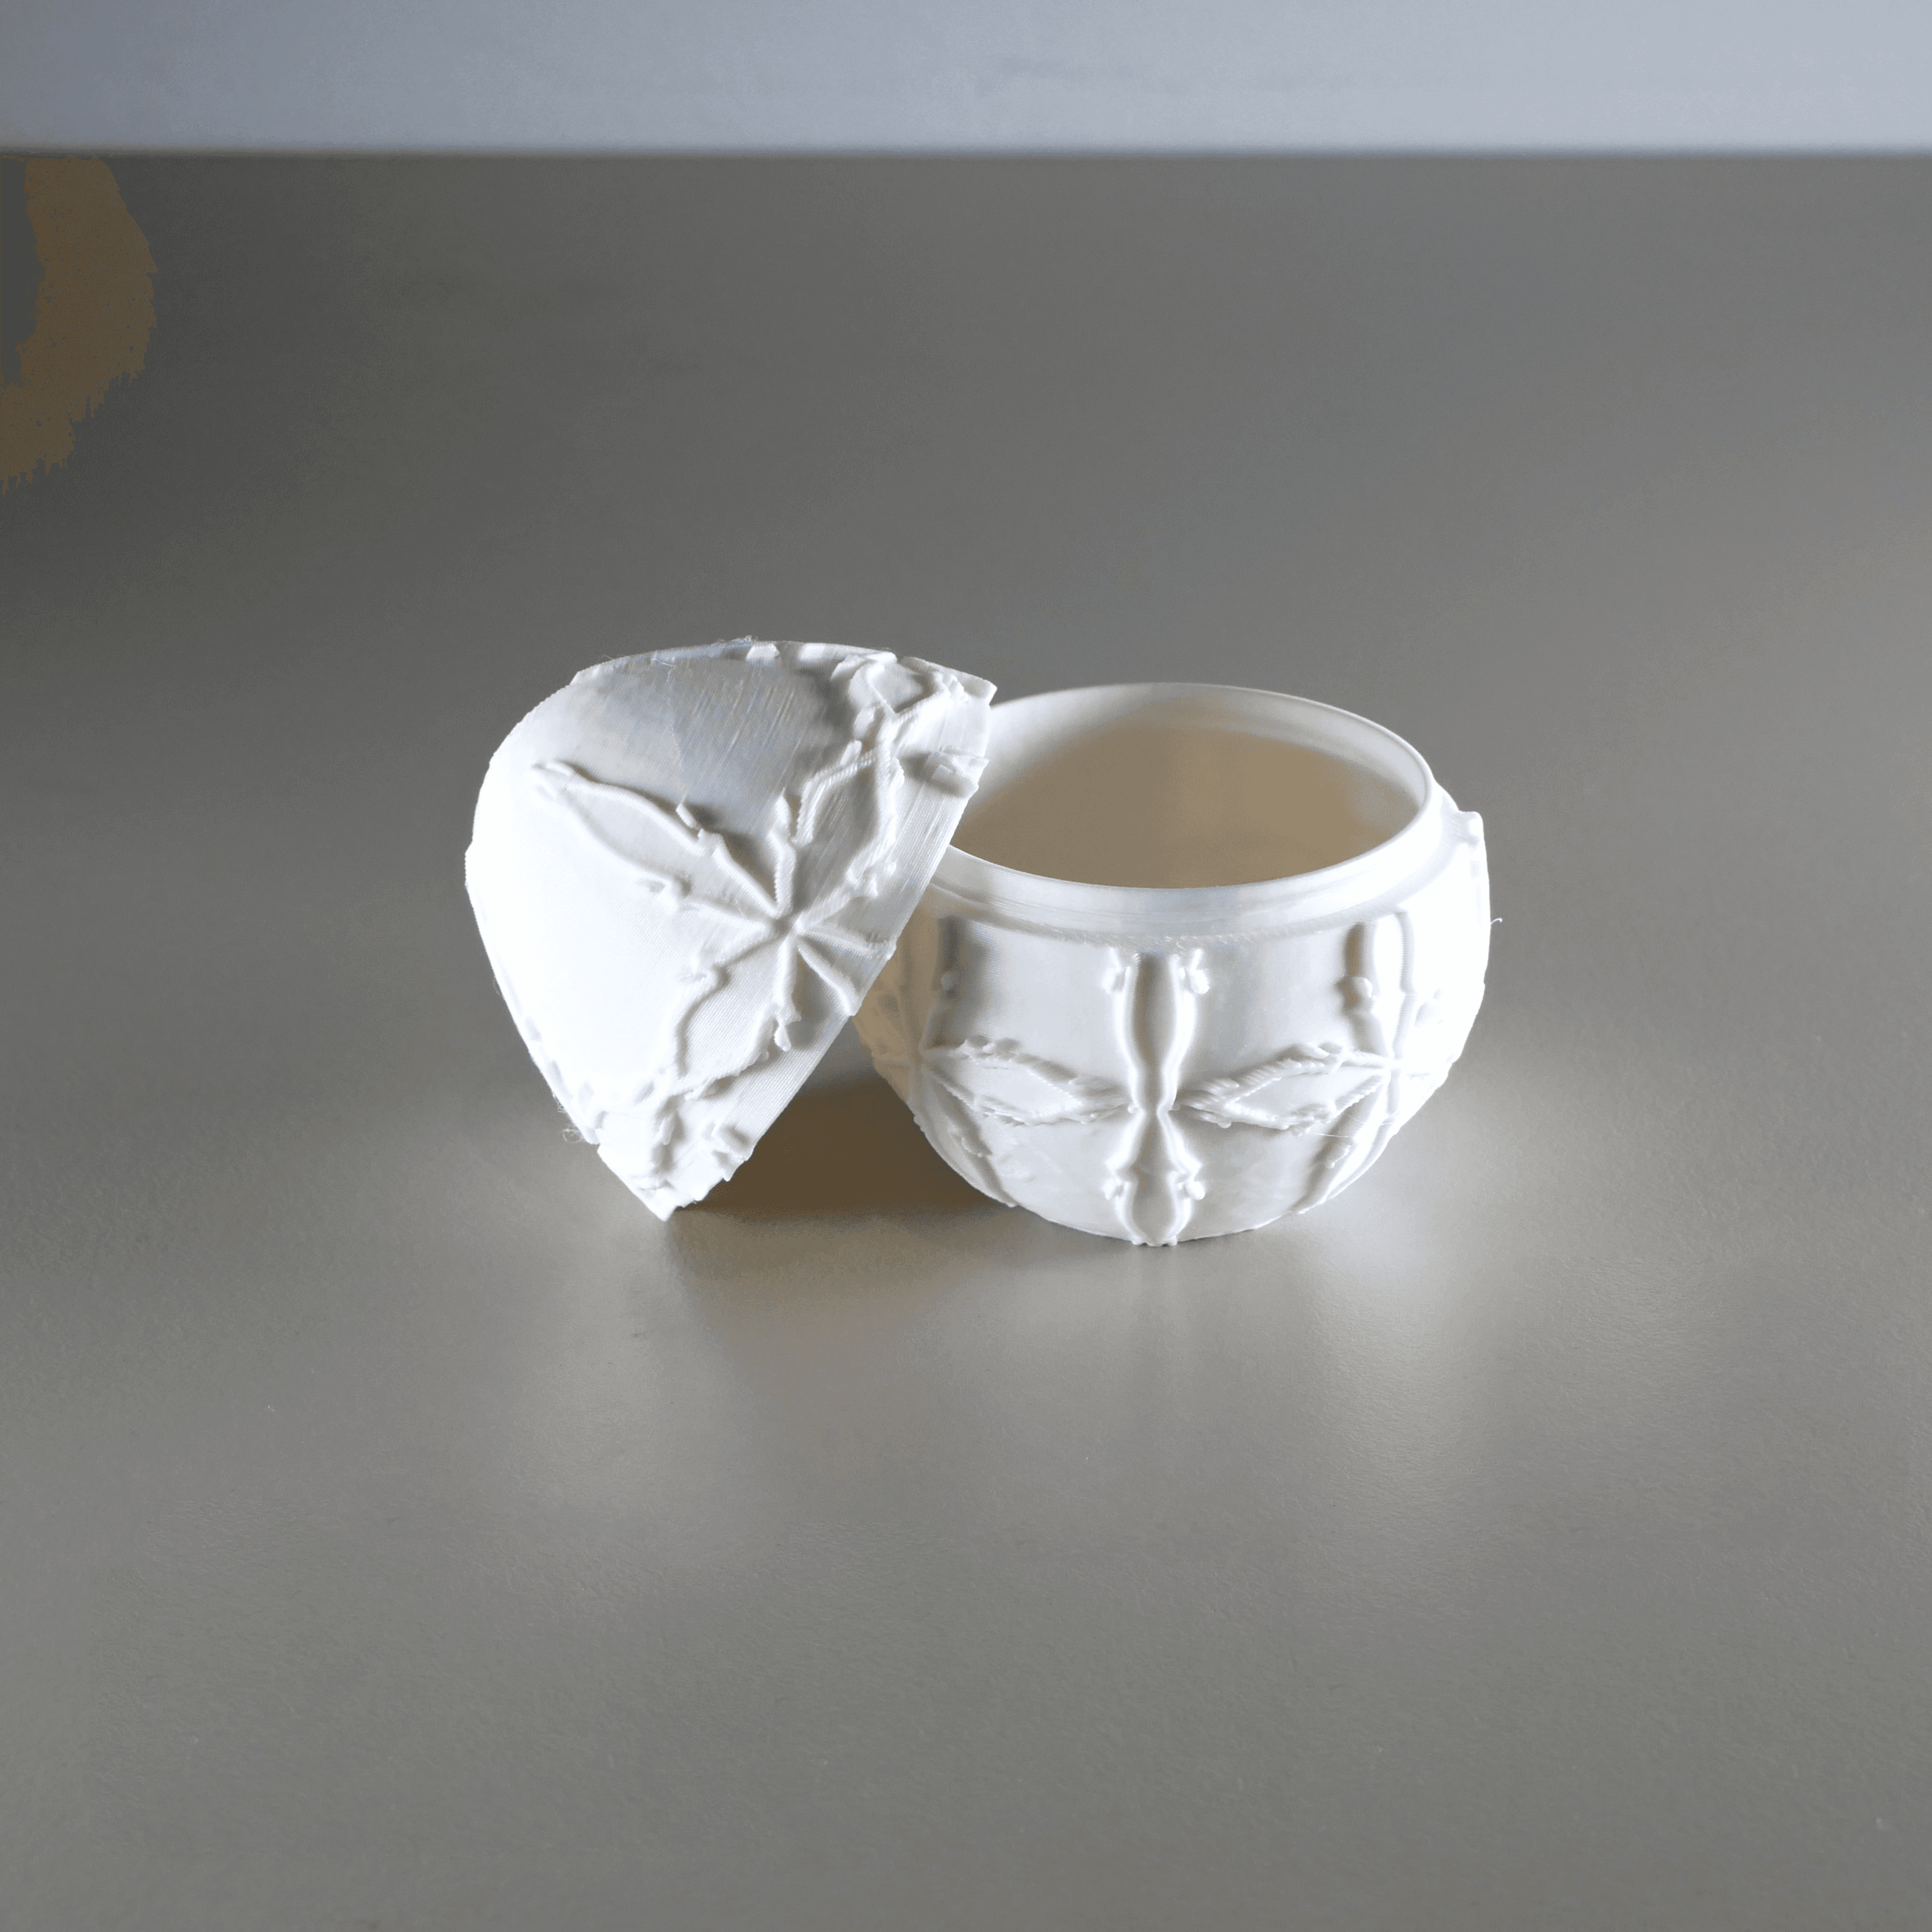 Easter Egg Gift Pot with Cross Design 3d model